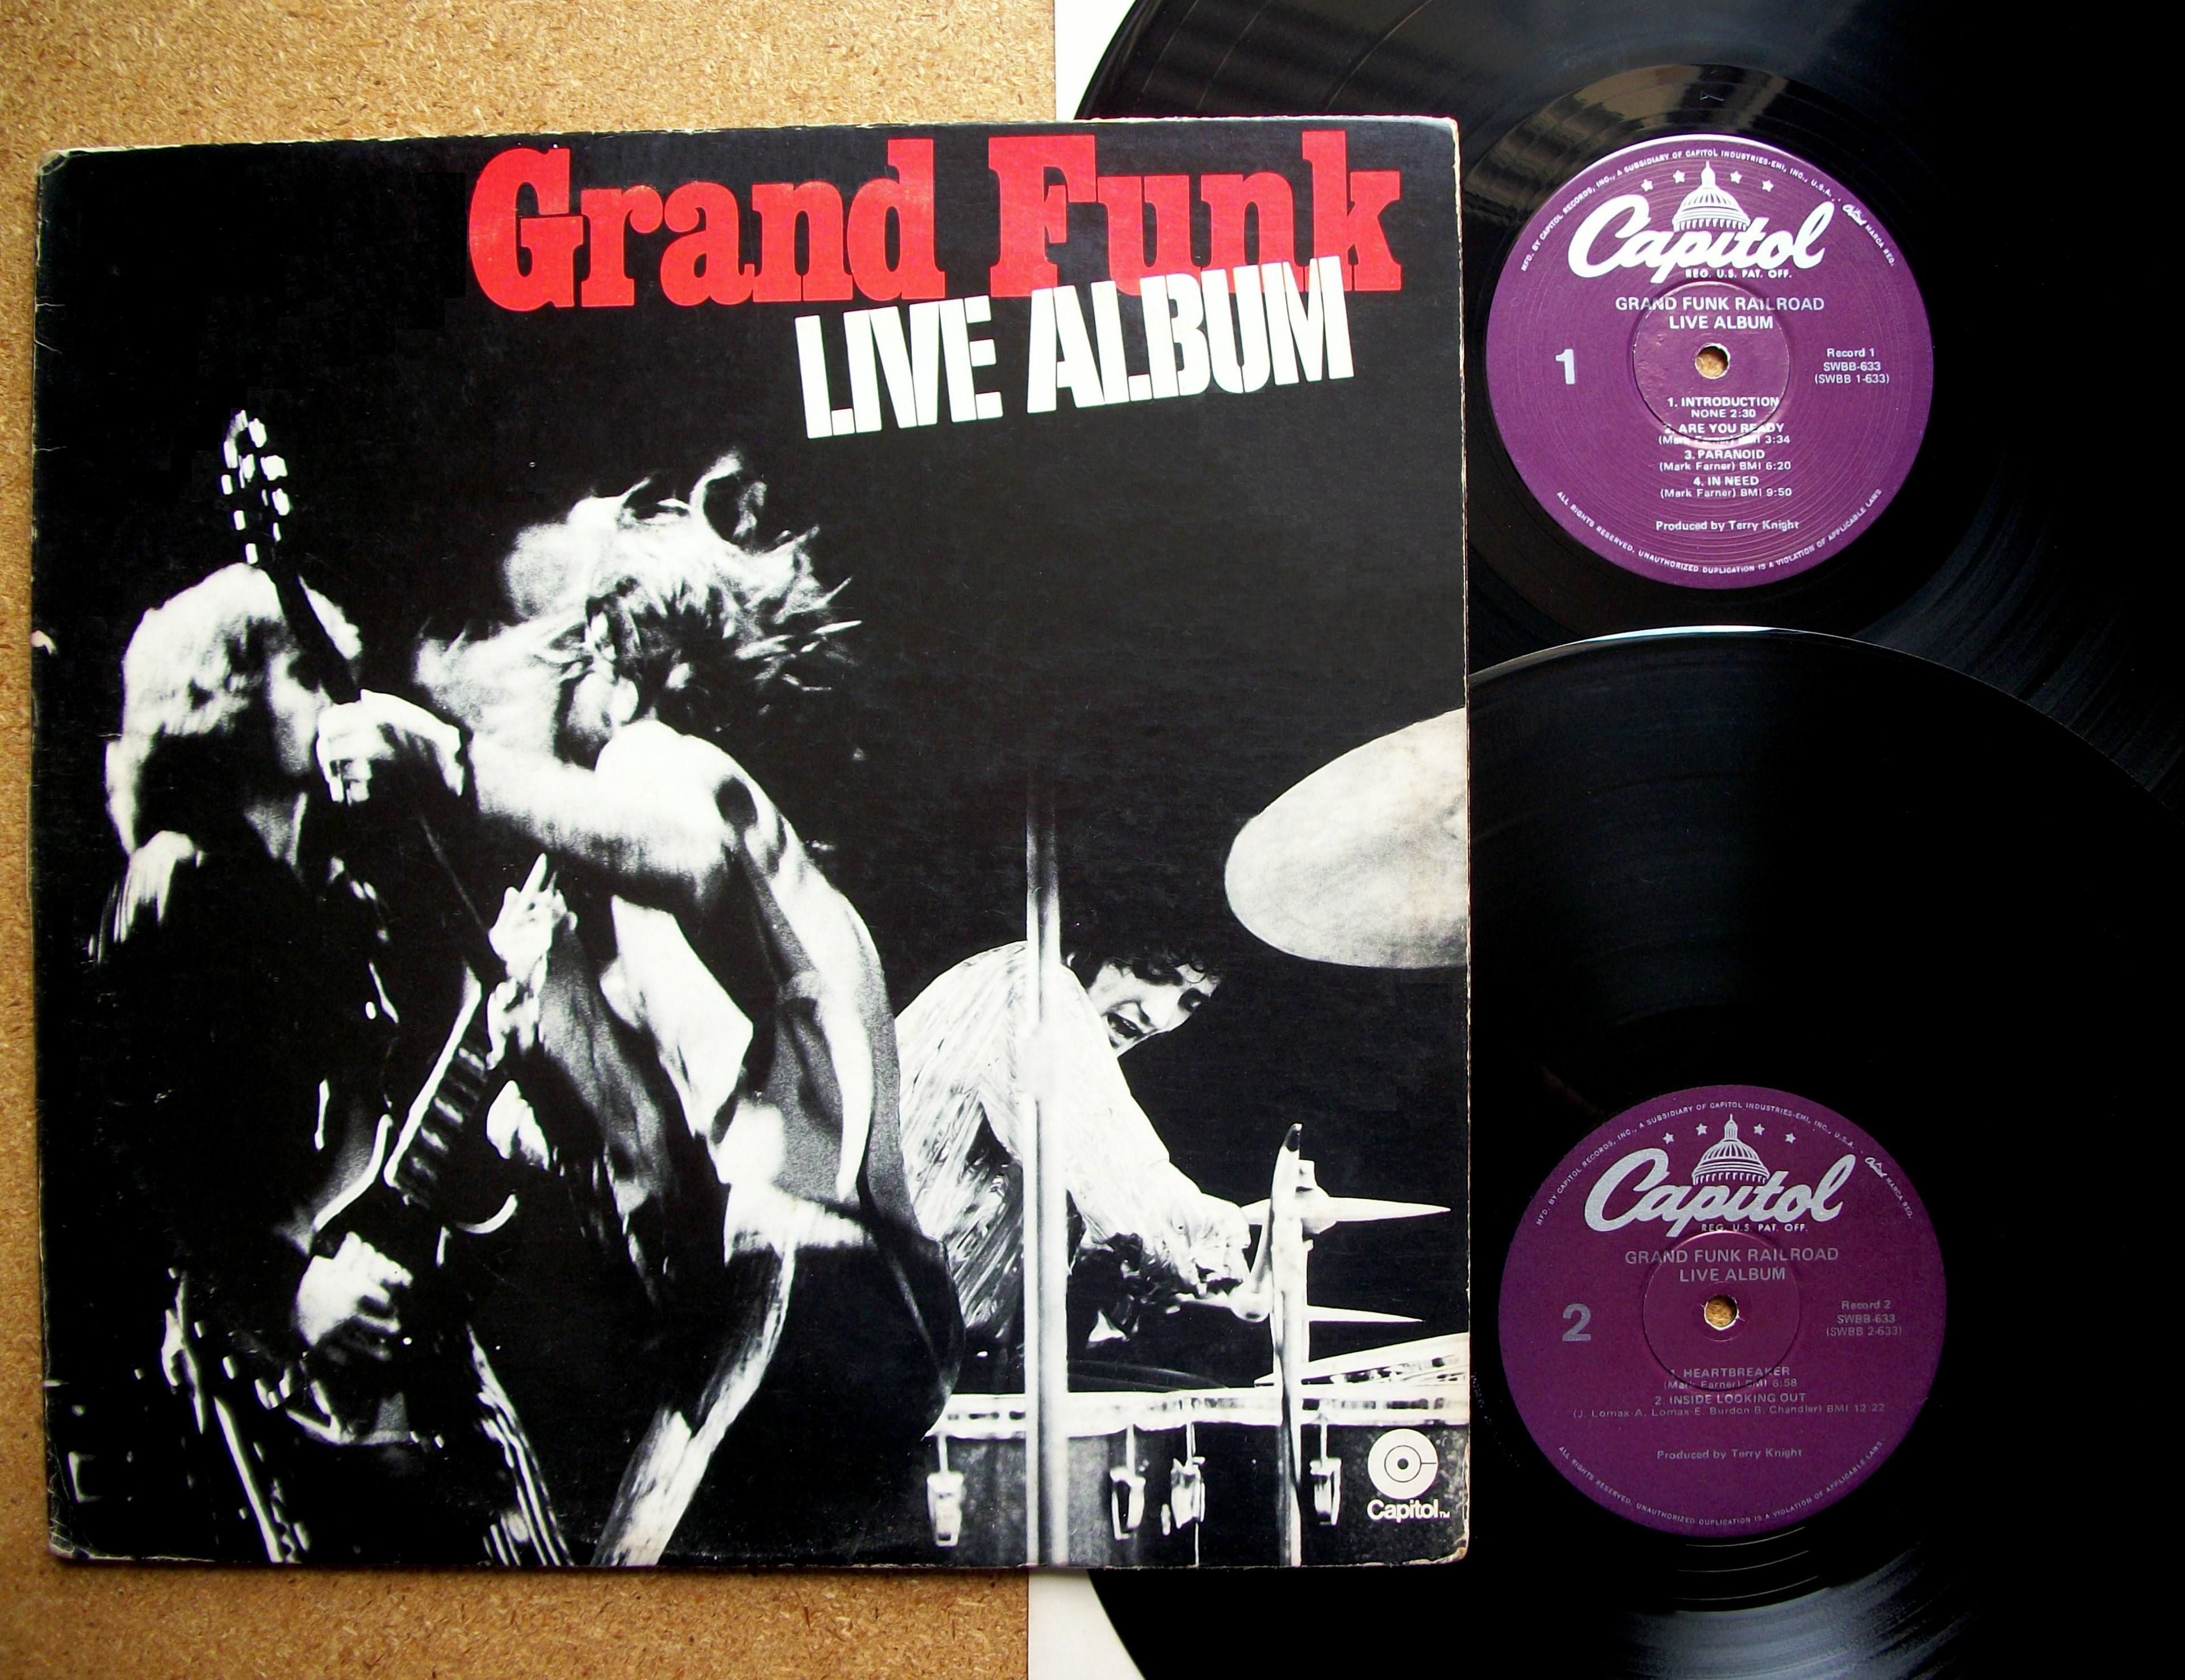 Grand funk слушать. Grand Funk Lives 1981. Grand Funk* – Live album. Grand Funk Railroad. Grand Funk Railroad аппаратура на концертах.